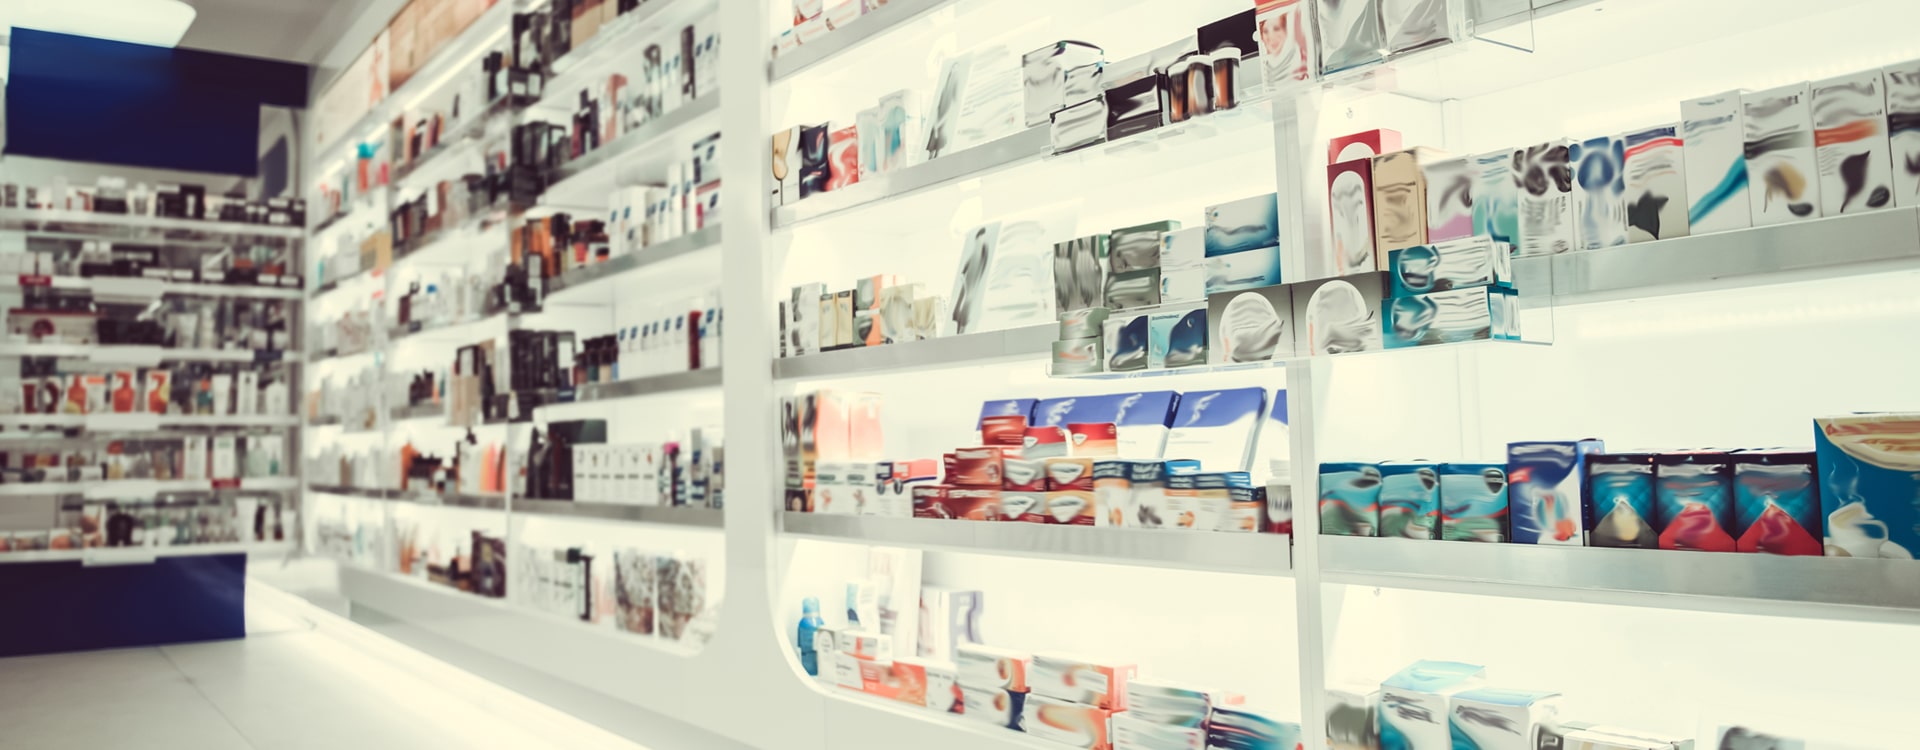 DSG compra franquia de farmácias e chega a mil lojas no país - Febrafar